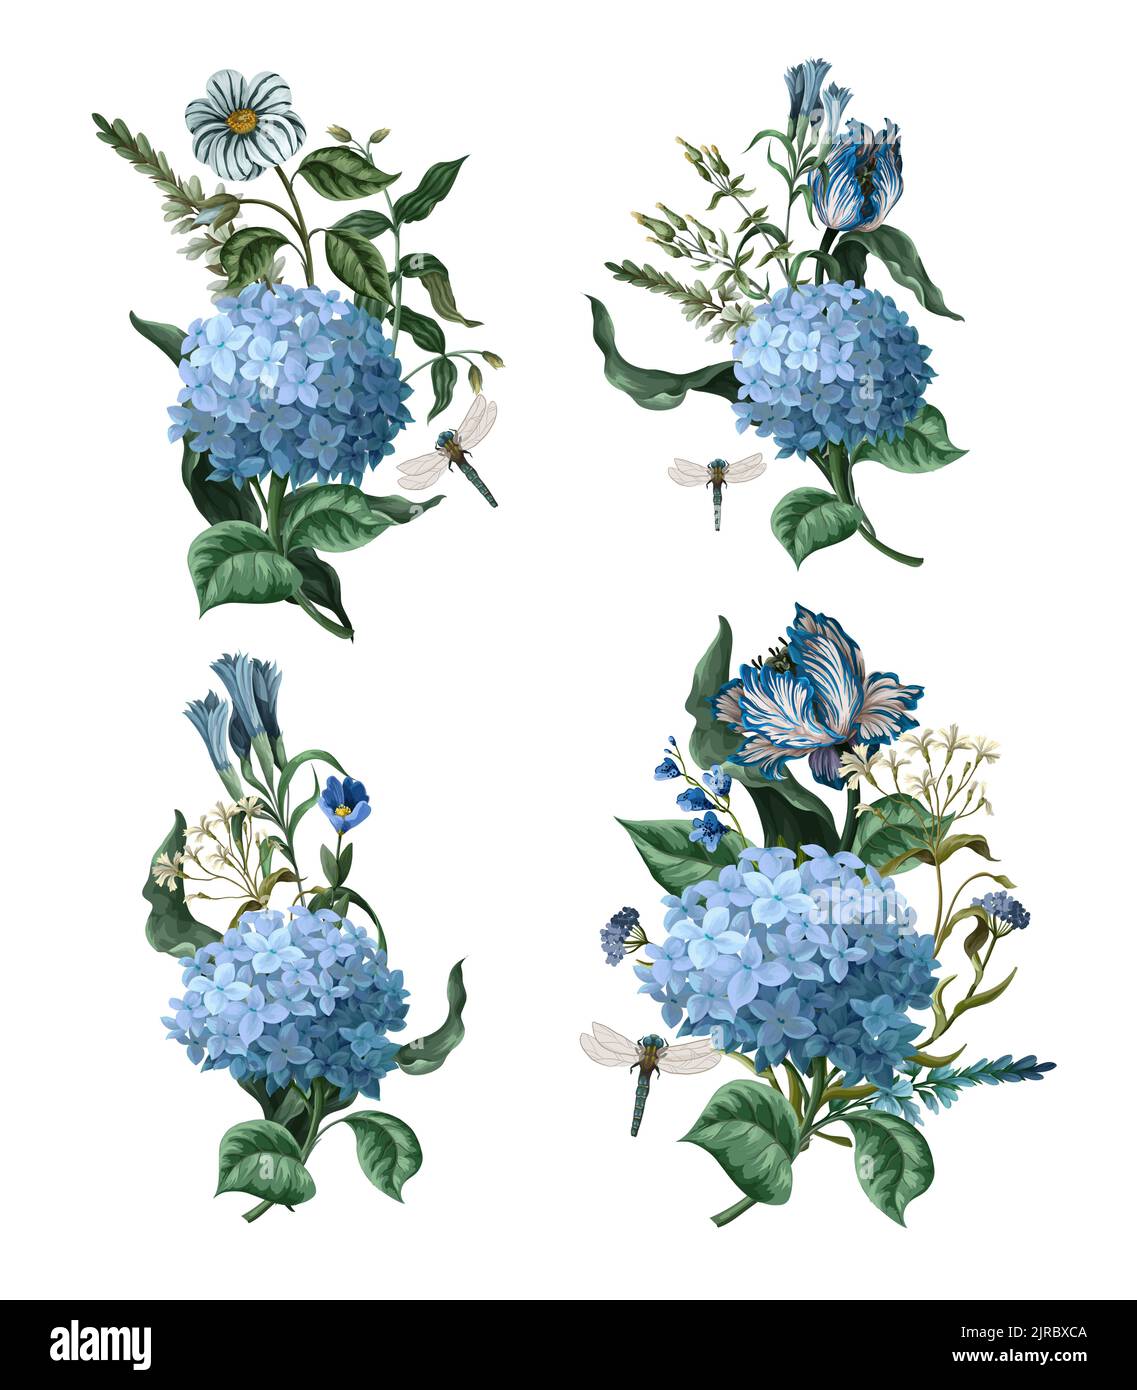 Bouquets avec des hortensias bleus et d'autres fleurs isolées. Vecteur. Illustration de Vecteur